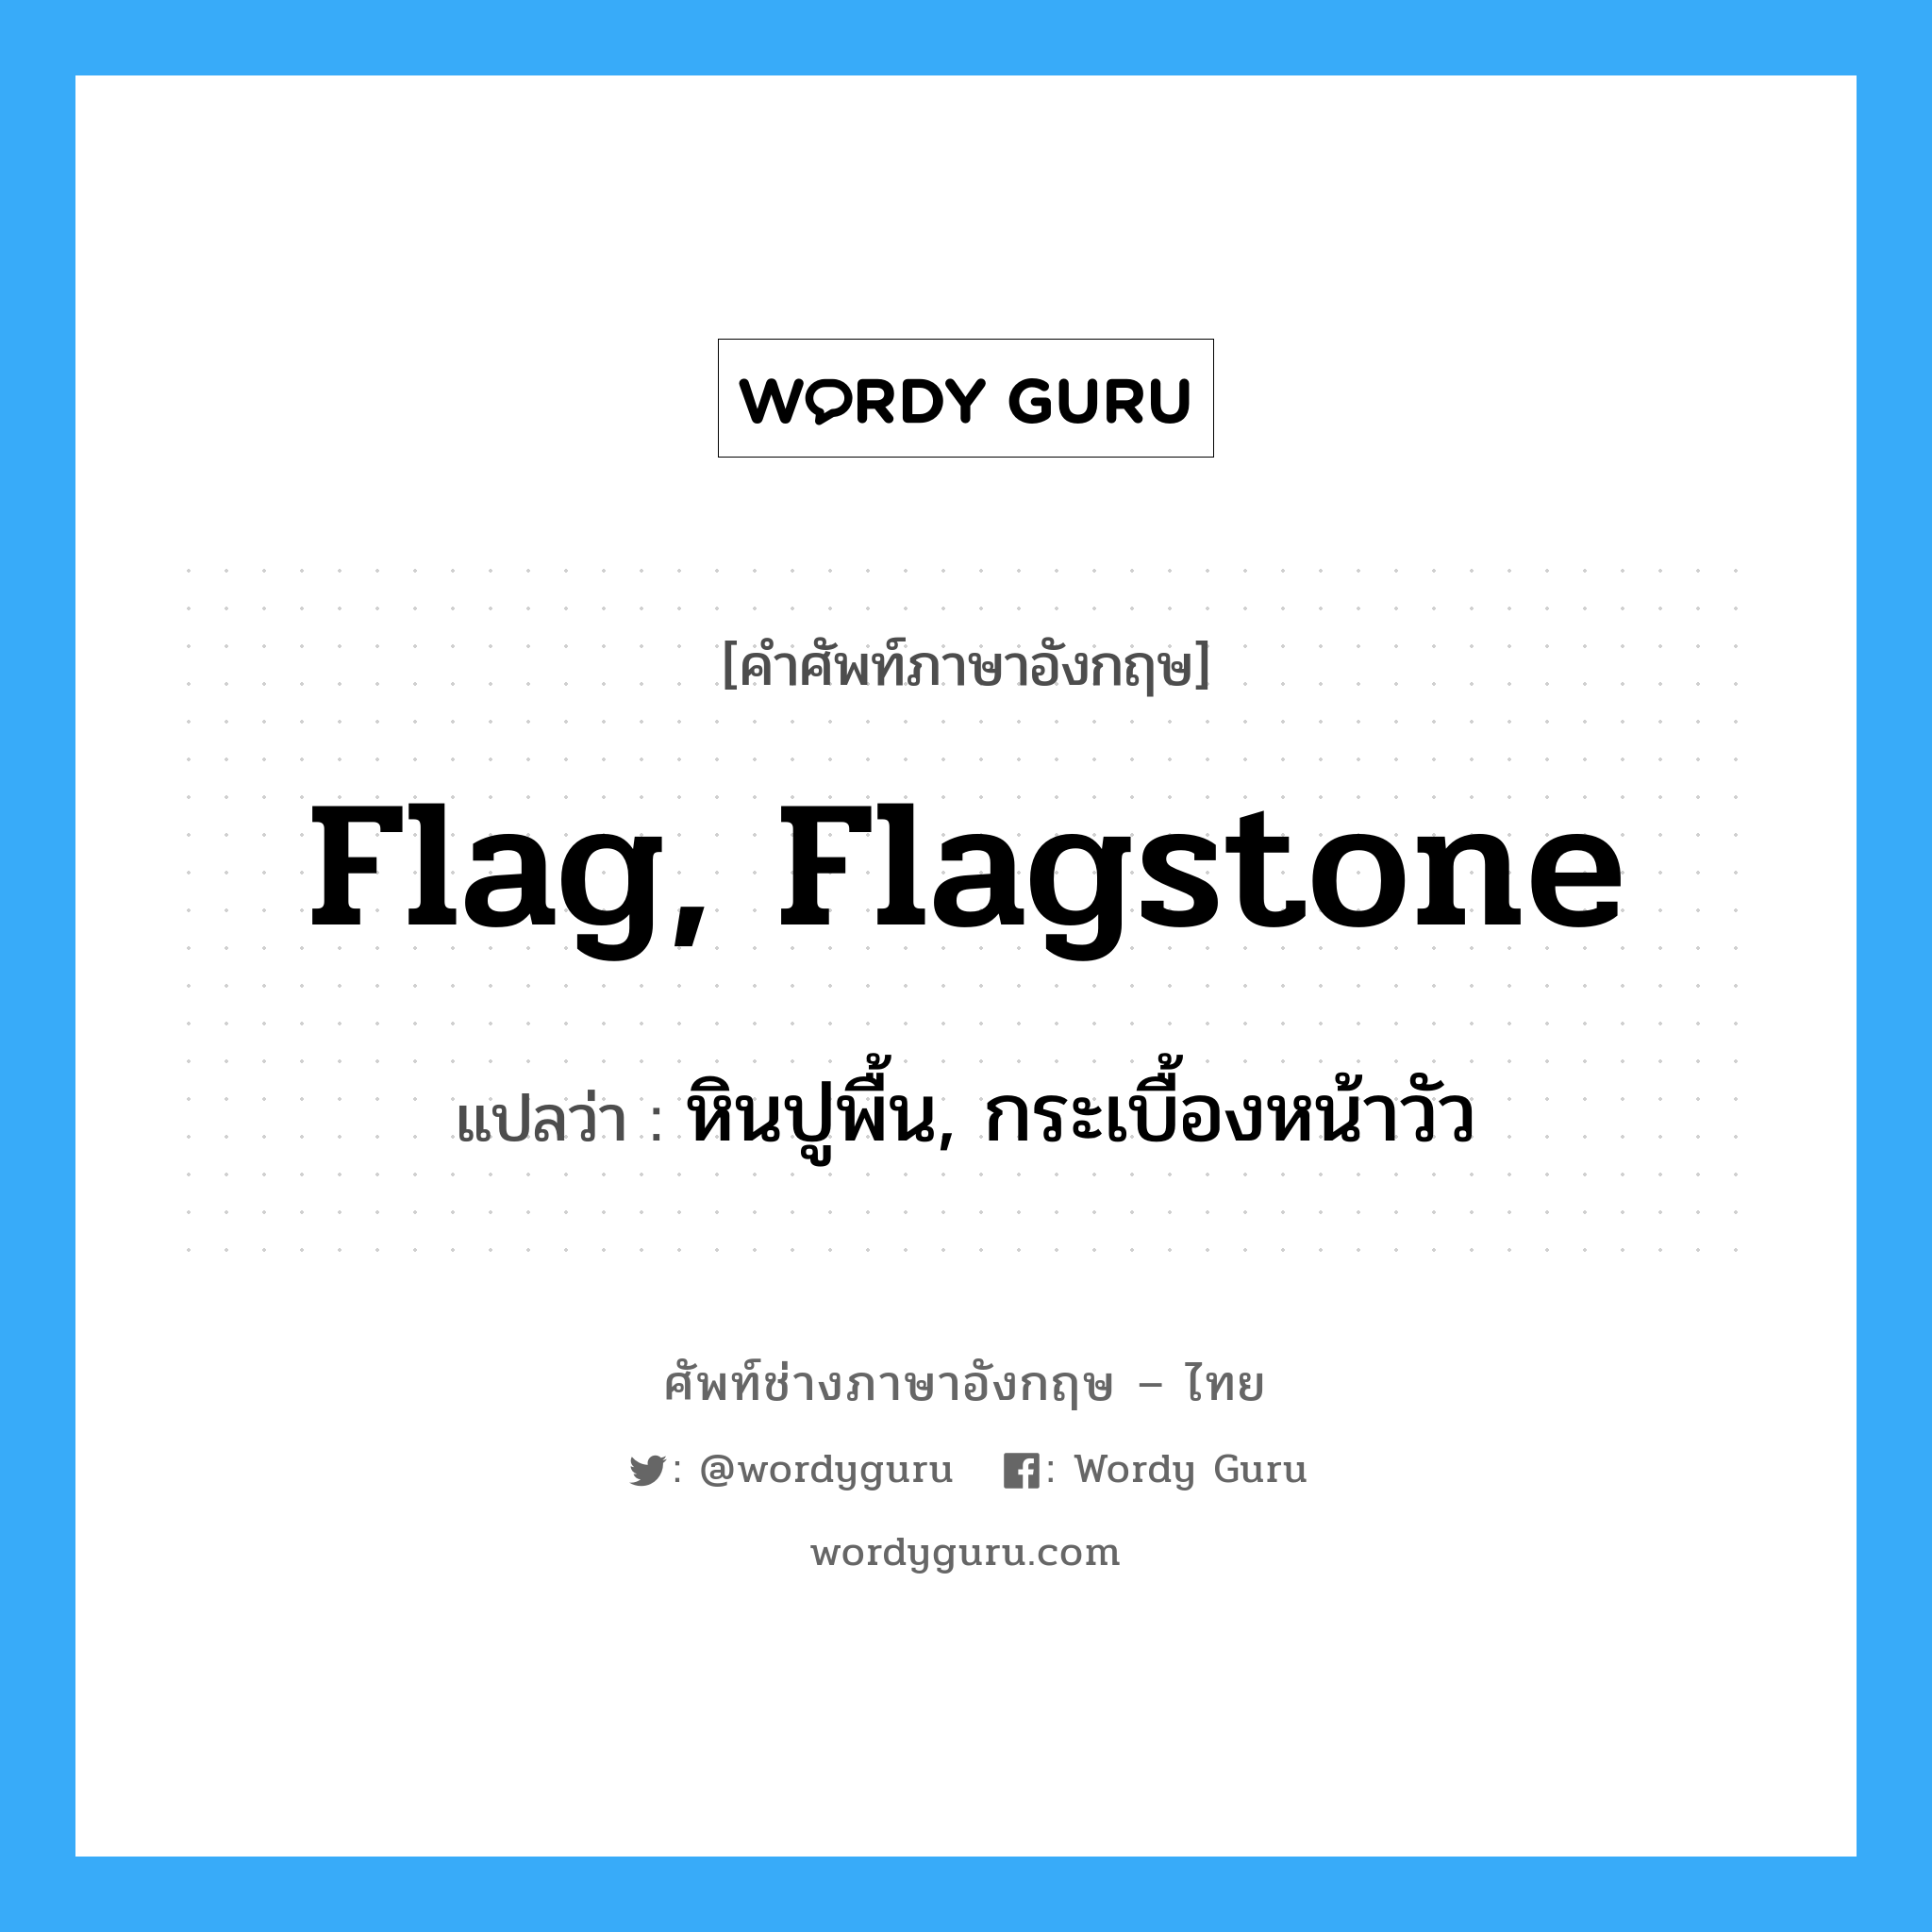 flag, flagstone แปลว่า?, คำศัพท์ช่างภาษาอังกฤษ - ไทย flag, flagstone คำศัพท์ภาษาอังกฤษ flag, flagstone แปลว่า หินปูพื้น, กระเบื้องหน้าวัว